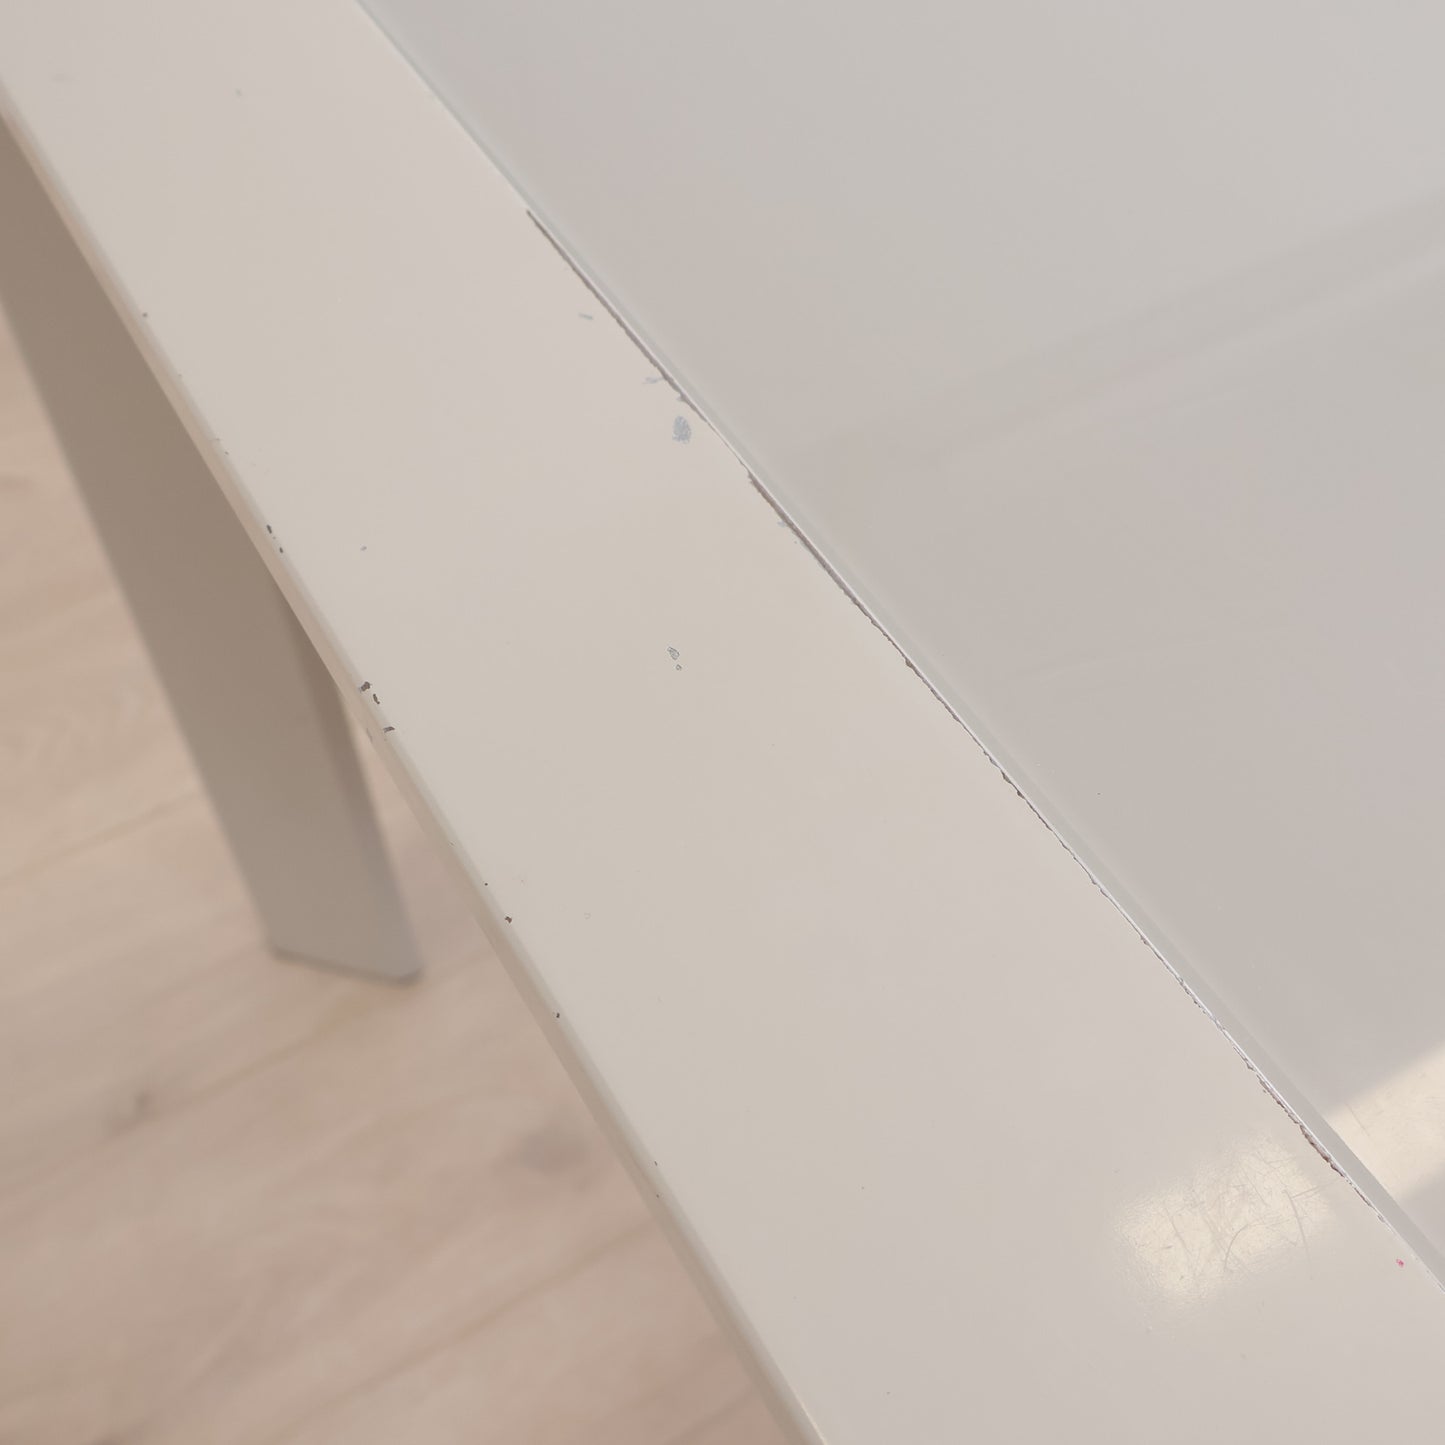 Kvalitetssikret | Spisebord med glassplate og ileggsplater, 140-230 x 90 cm